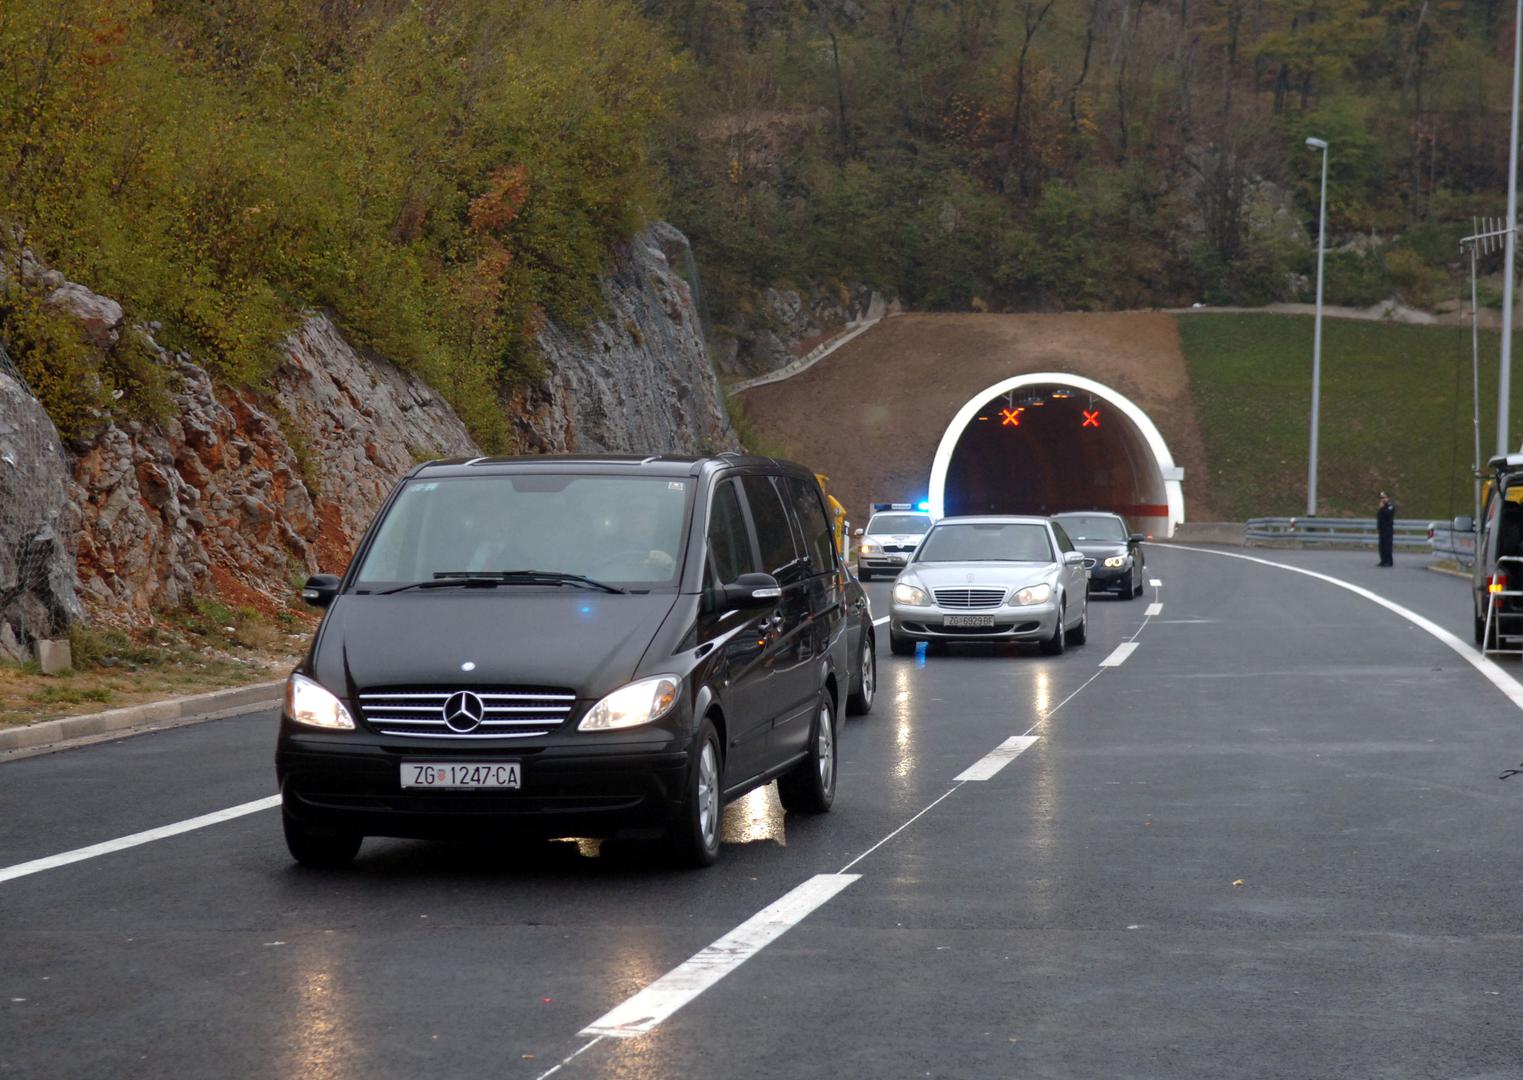 7. Tunel Tuhobić, 2.141 metar: Tunel Tuhobić vitalni je dio hrvatske autoceste A6, dužine 2143 metra i najduži je tunel na ovoj trasi. Spaja Gorski kotar i Hrvatsko primorje, a druga tunelska cijev završena je desetljeće nakon prve. Cijela autocesta A6, uključujući obje cijevi tunela, otvorena je u listopadu 2008. godine i radi po zatvorenom sustavu naplate cestarine.